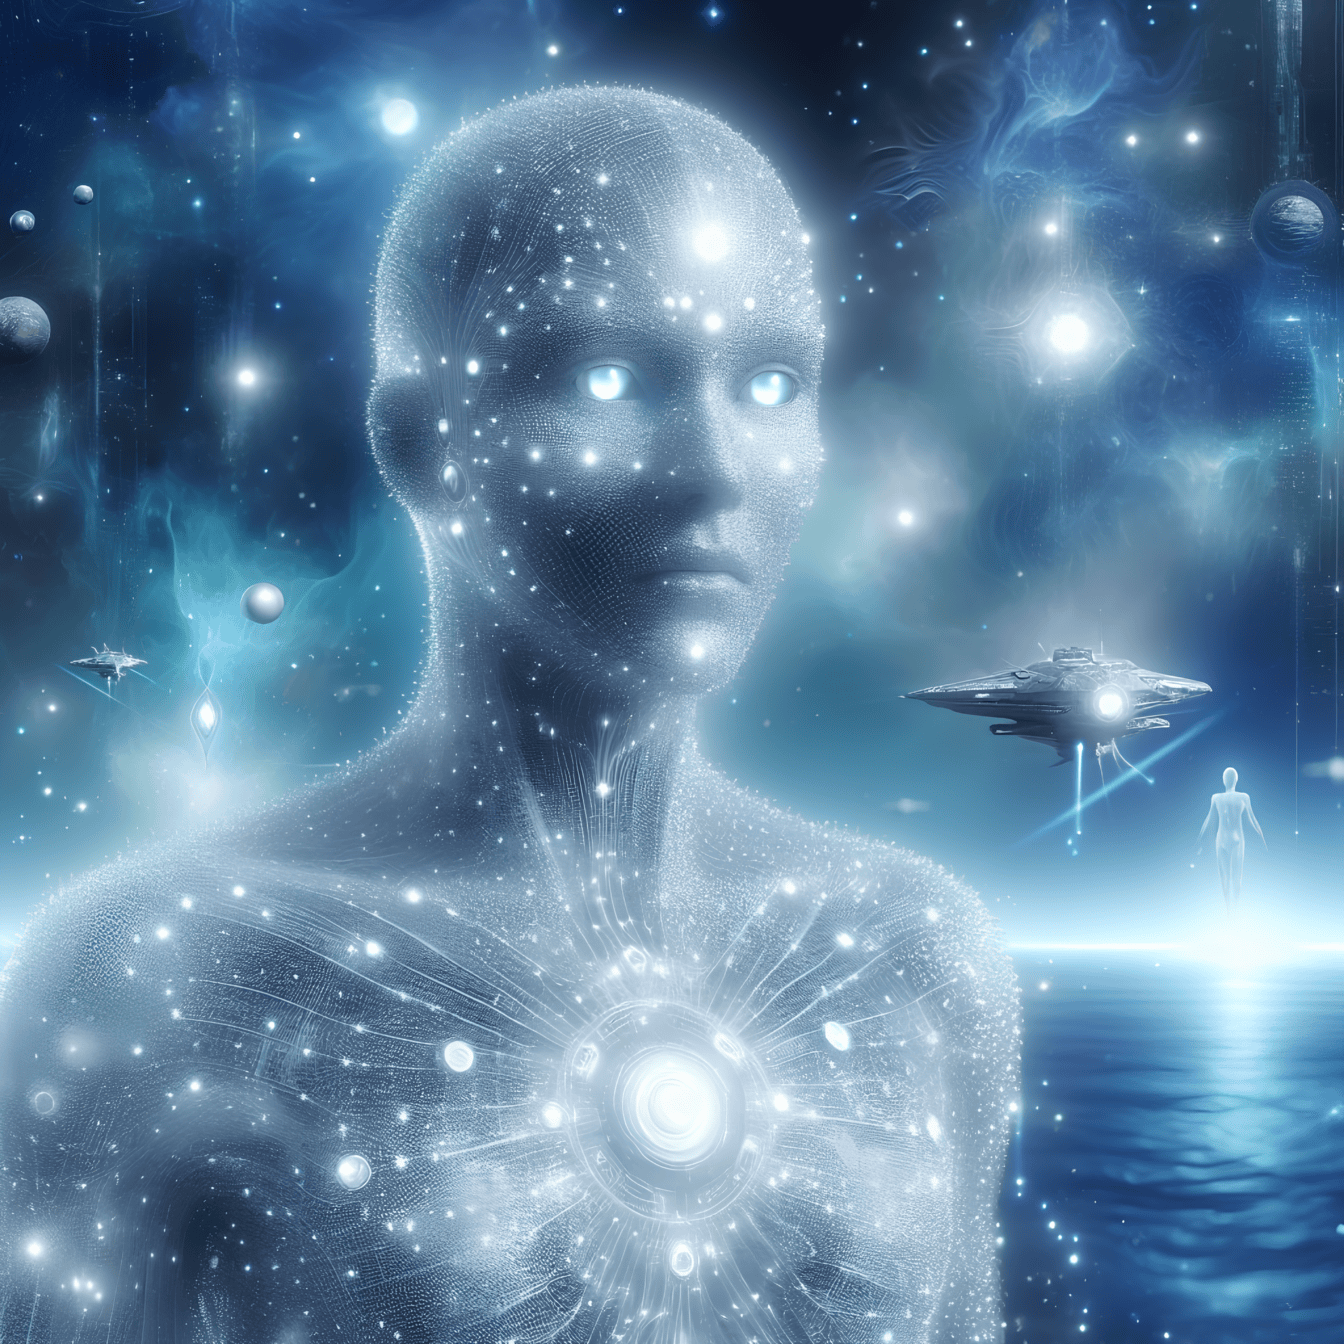 Uma forma de vida alienígena surreal, um extraterrestre humanoide espiritual com olhos azuis brilhantes